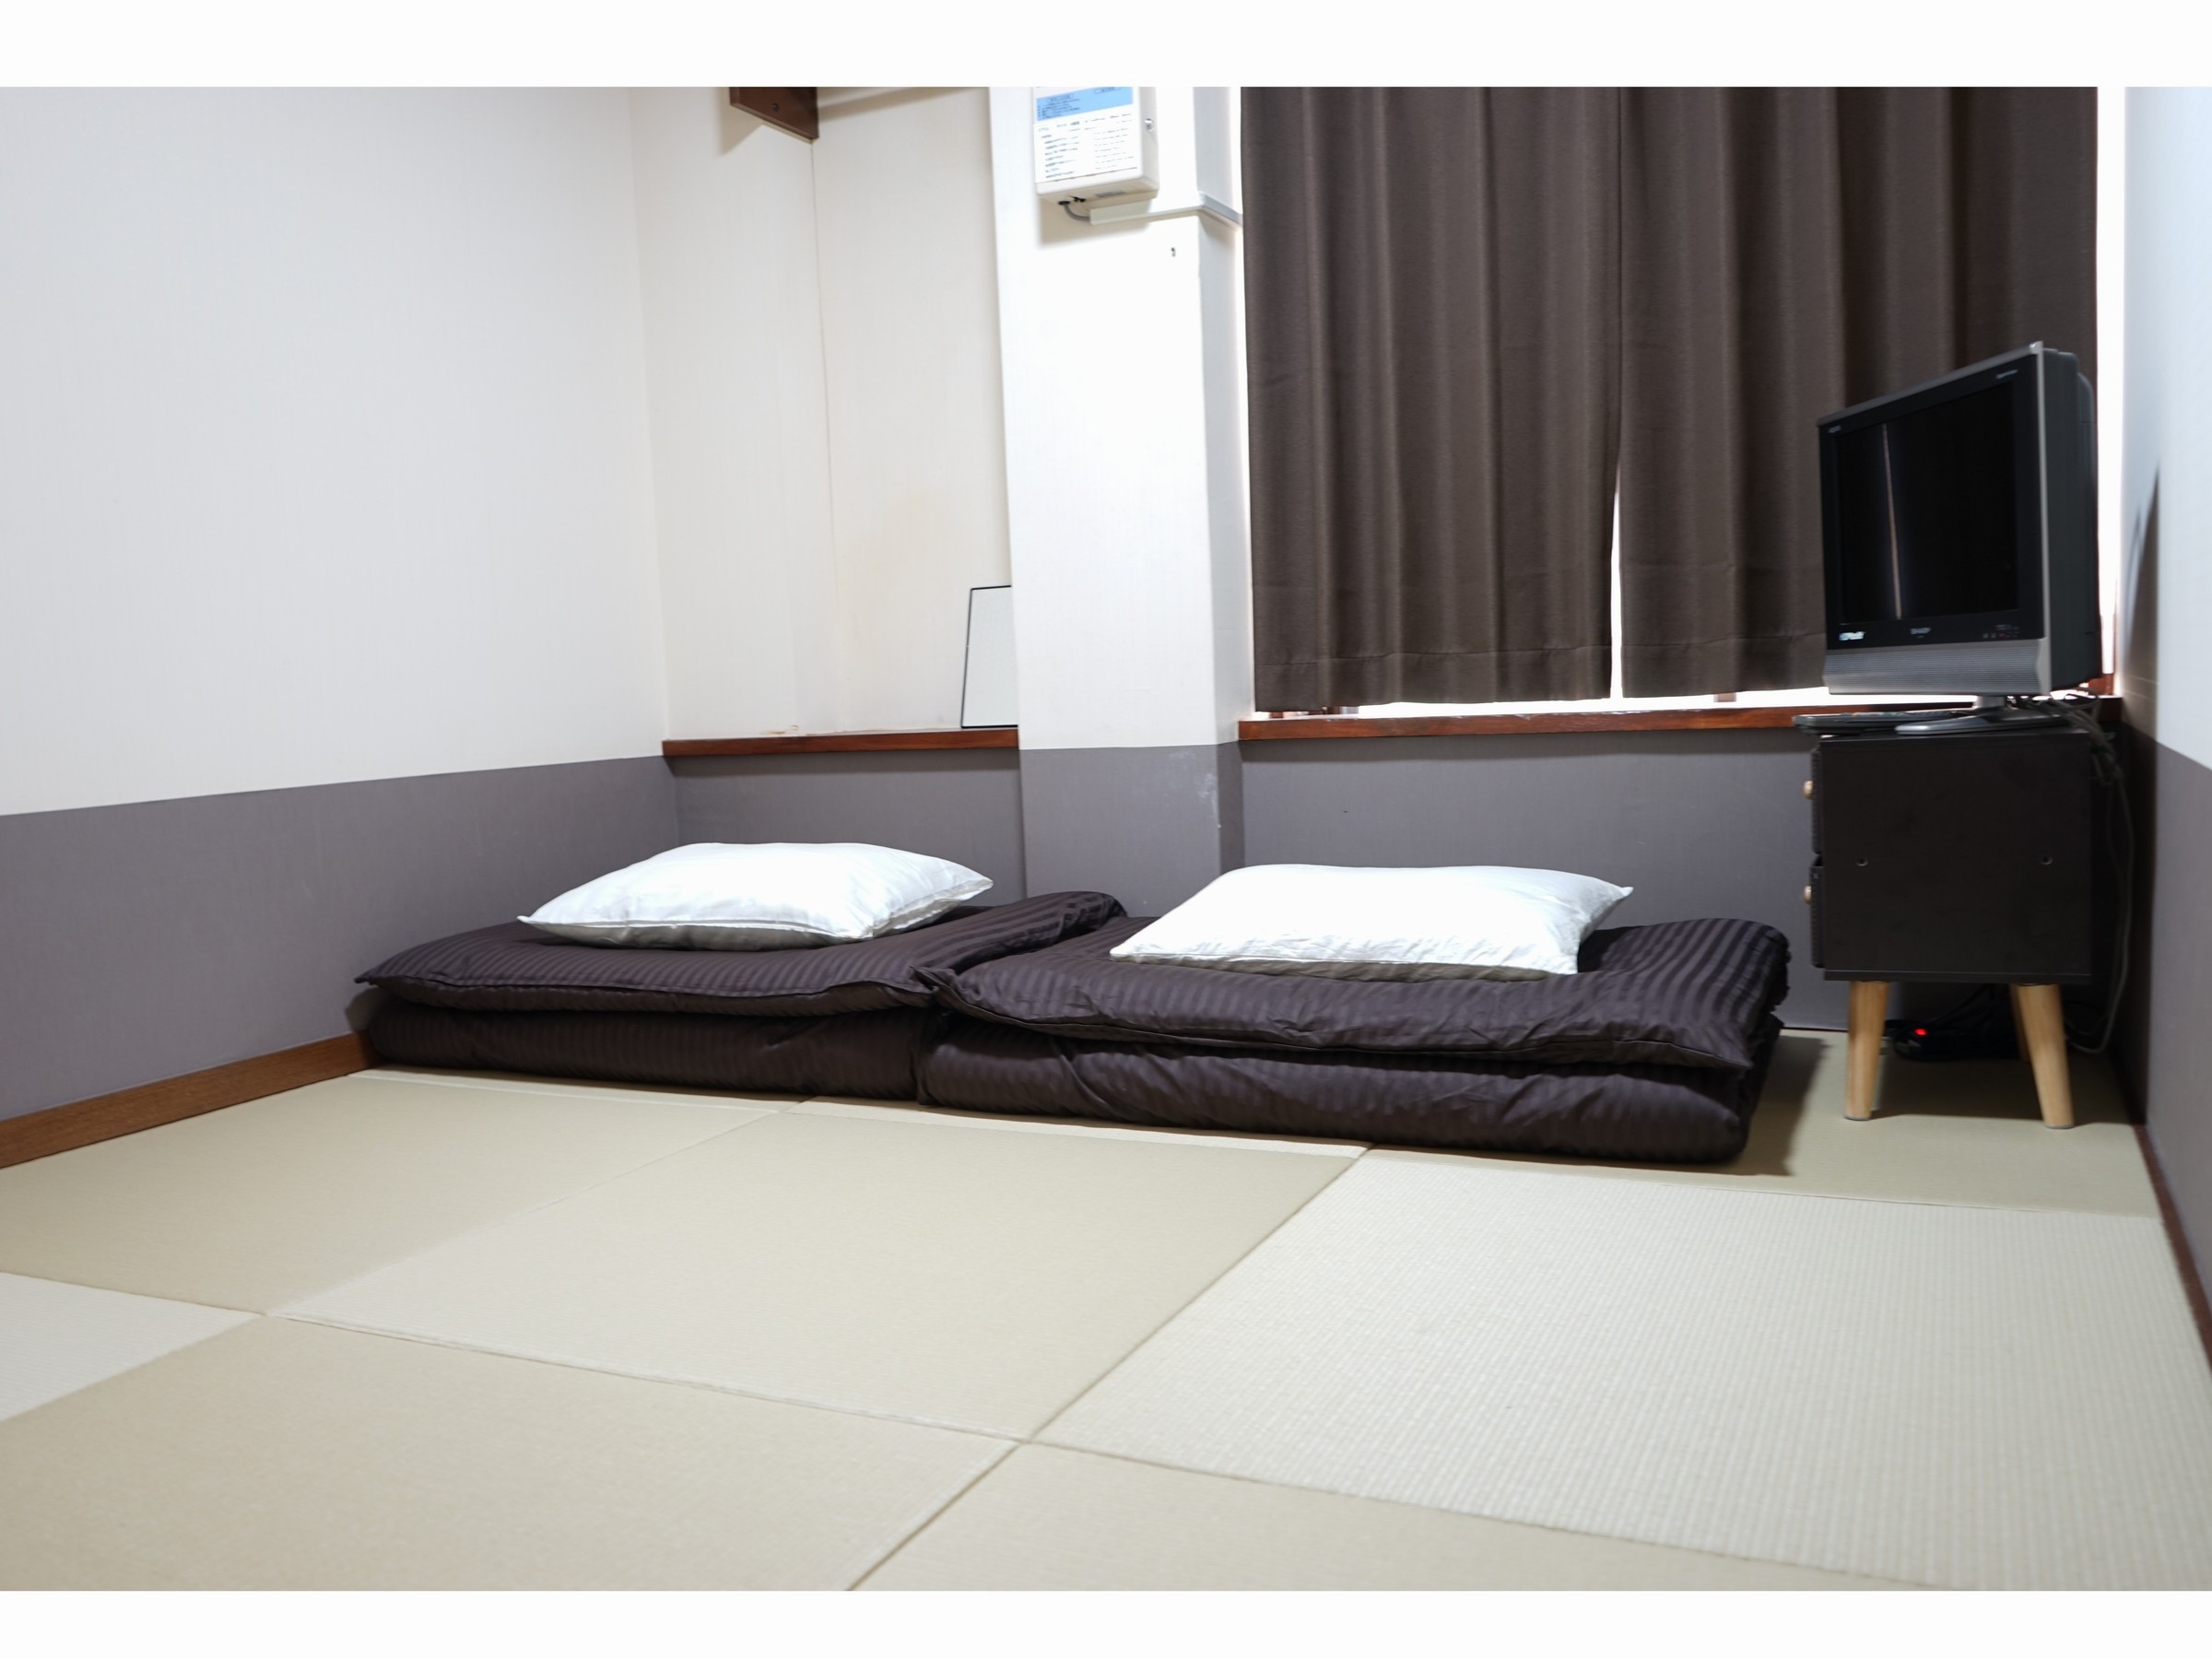 こちらは和紙の琉球畳のツインルームとなります♪